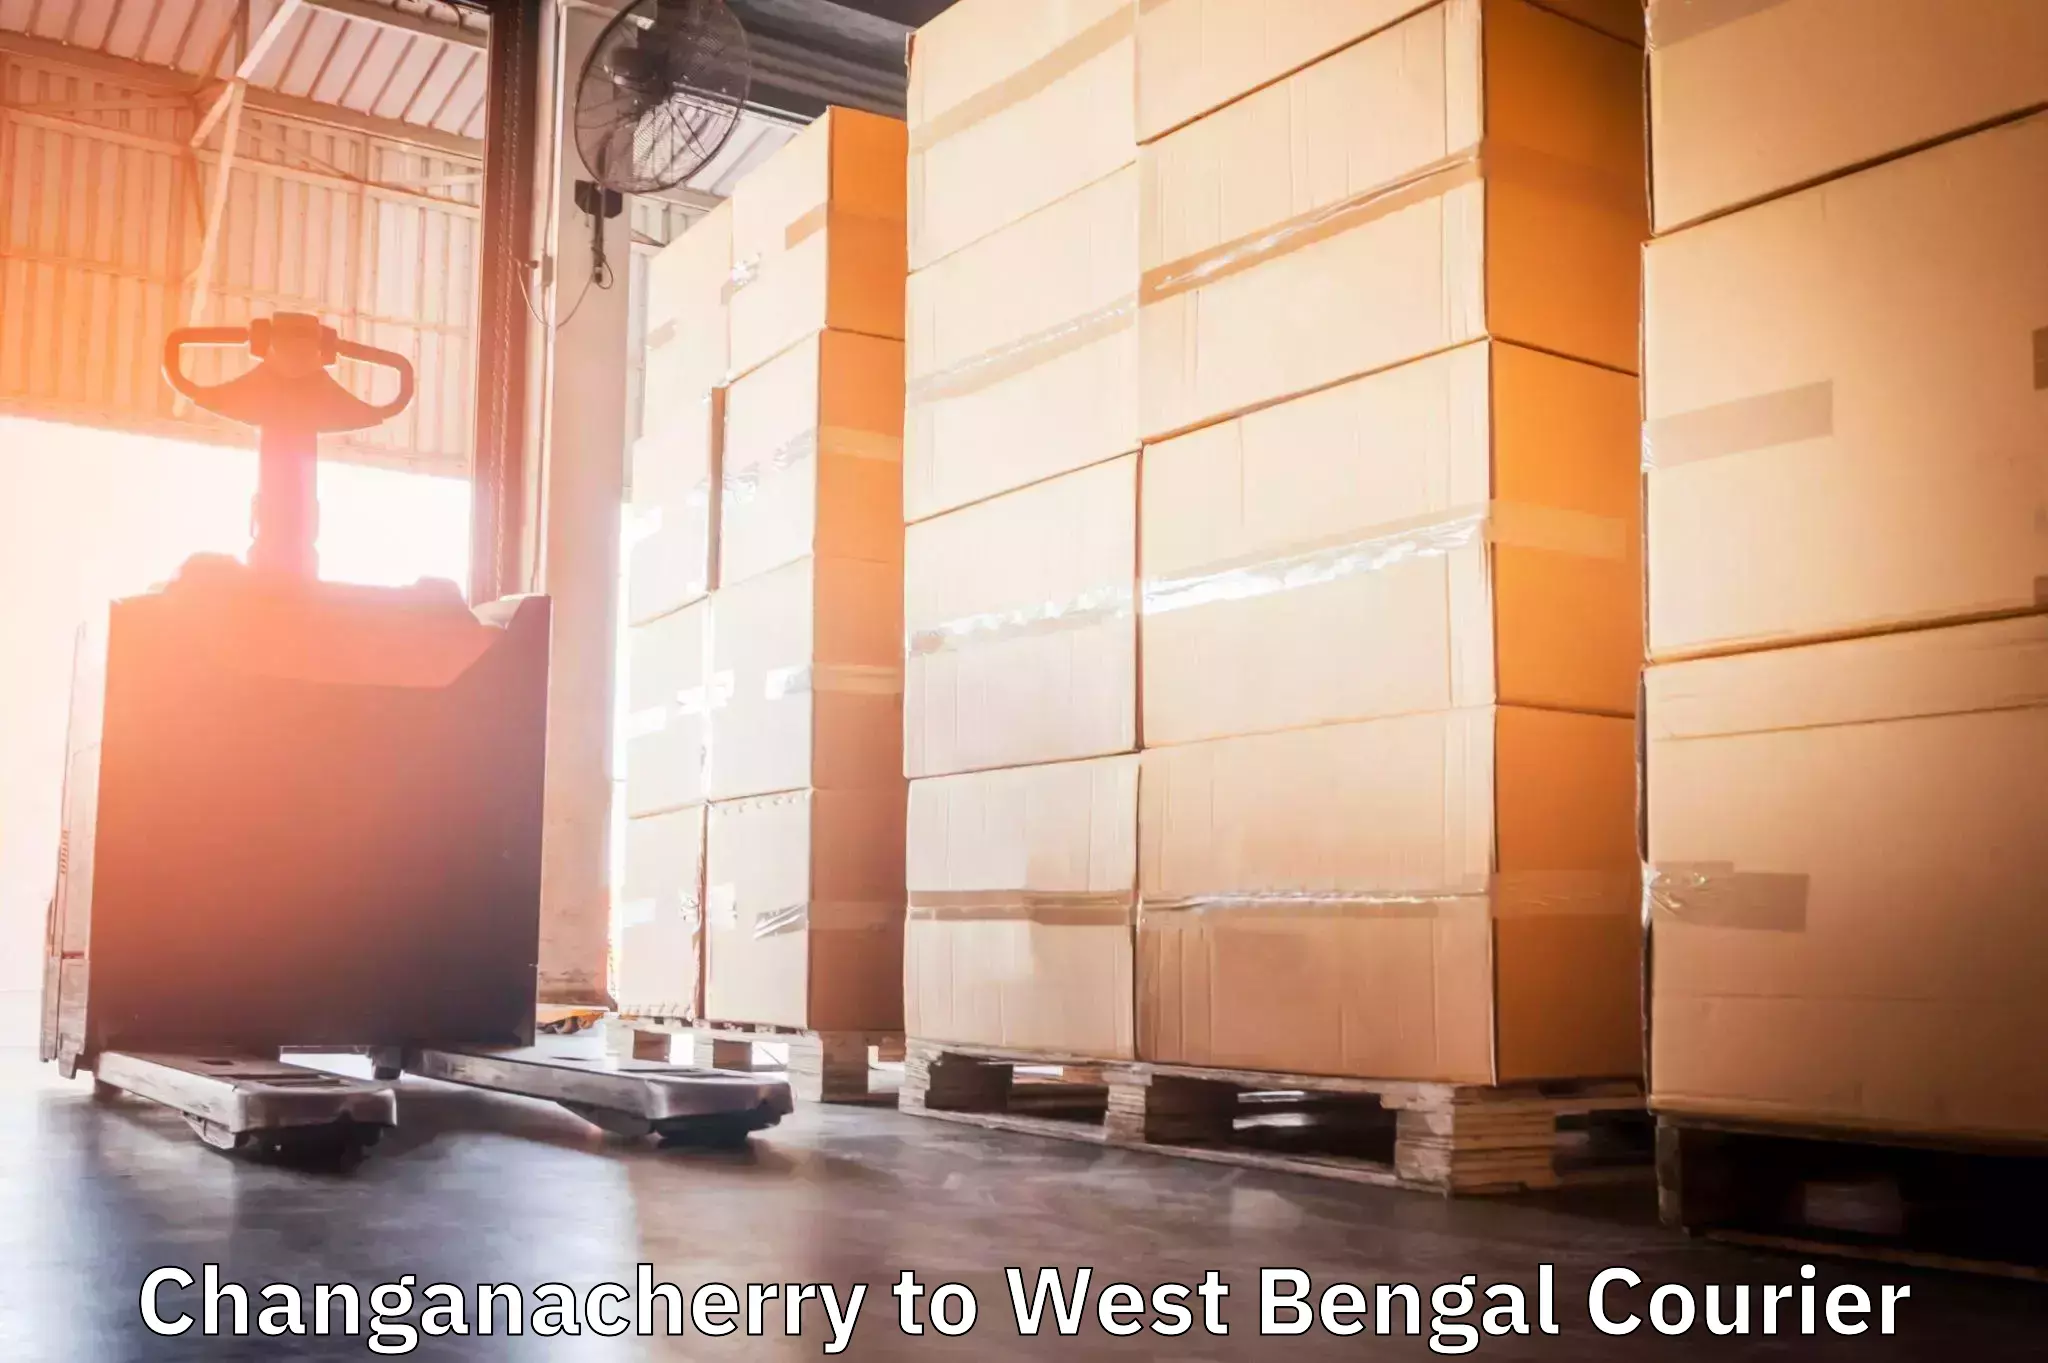 Door-to-door freight service Changanacherry to Tollygunge